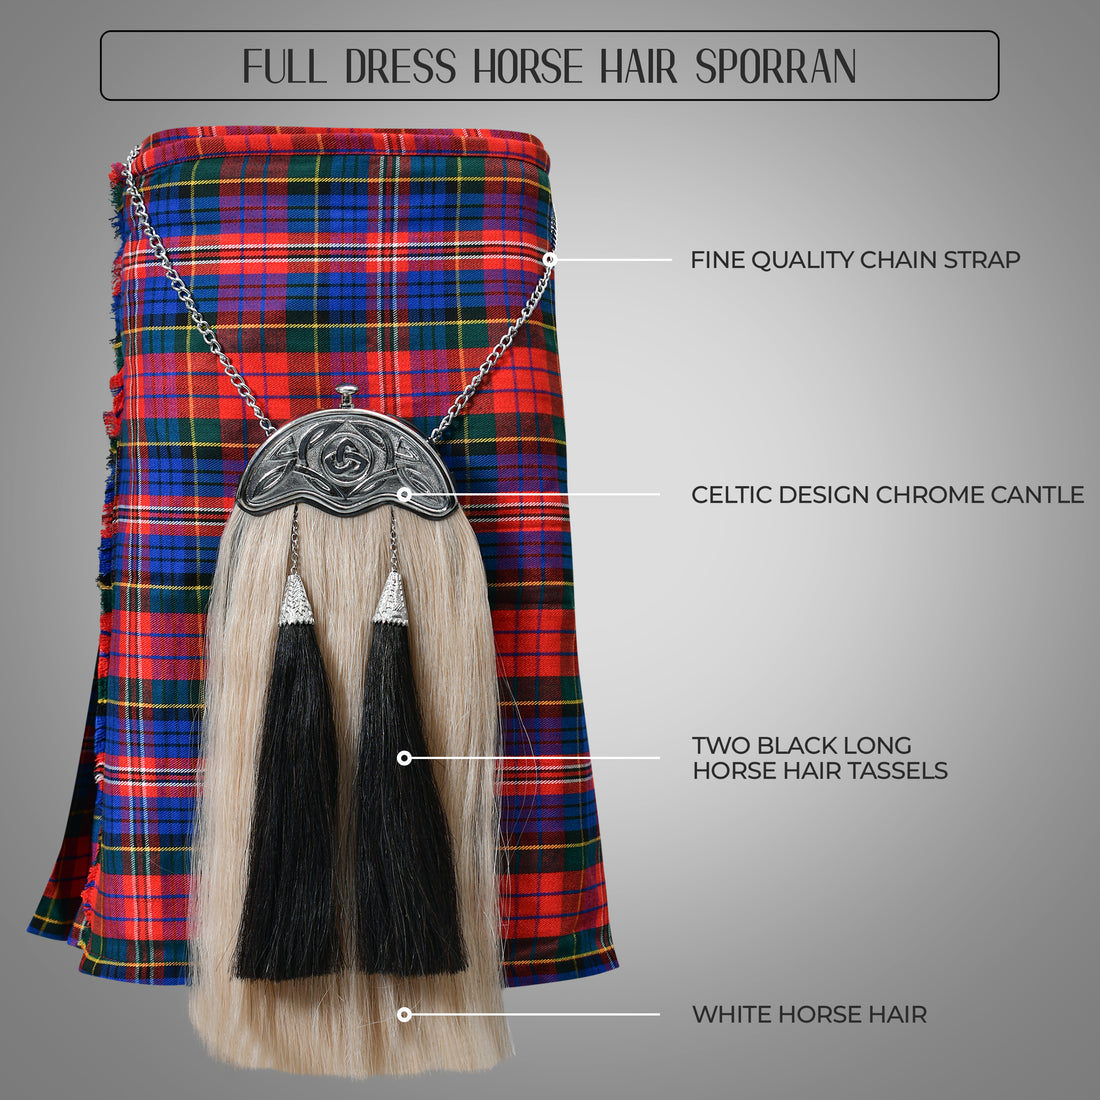 Full Dress Horse Hair Sporran w/ Celtic Design Chrome Cantle